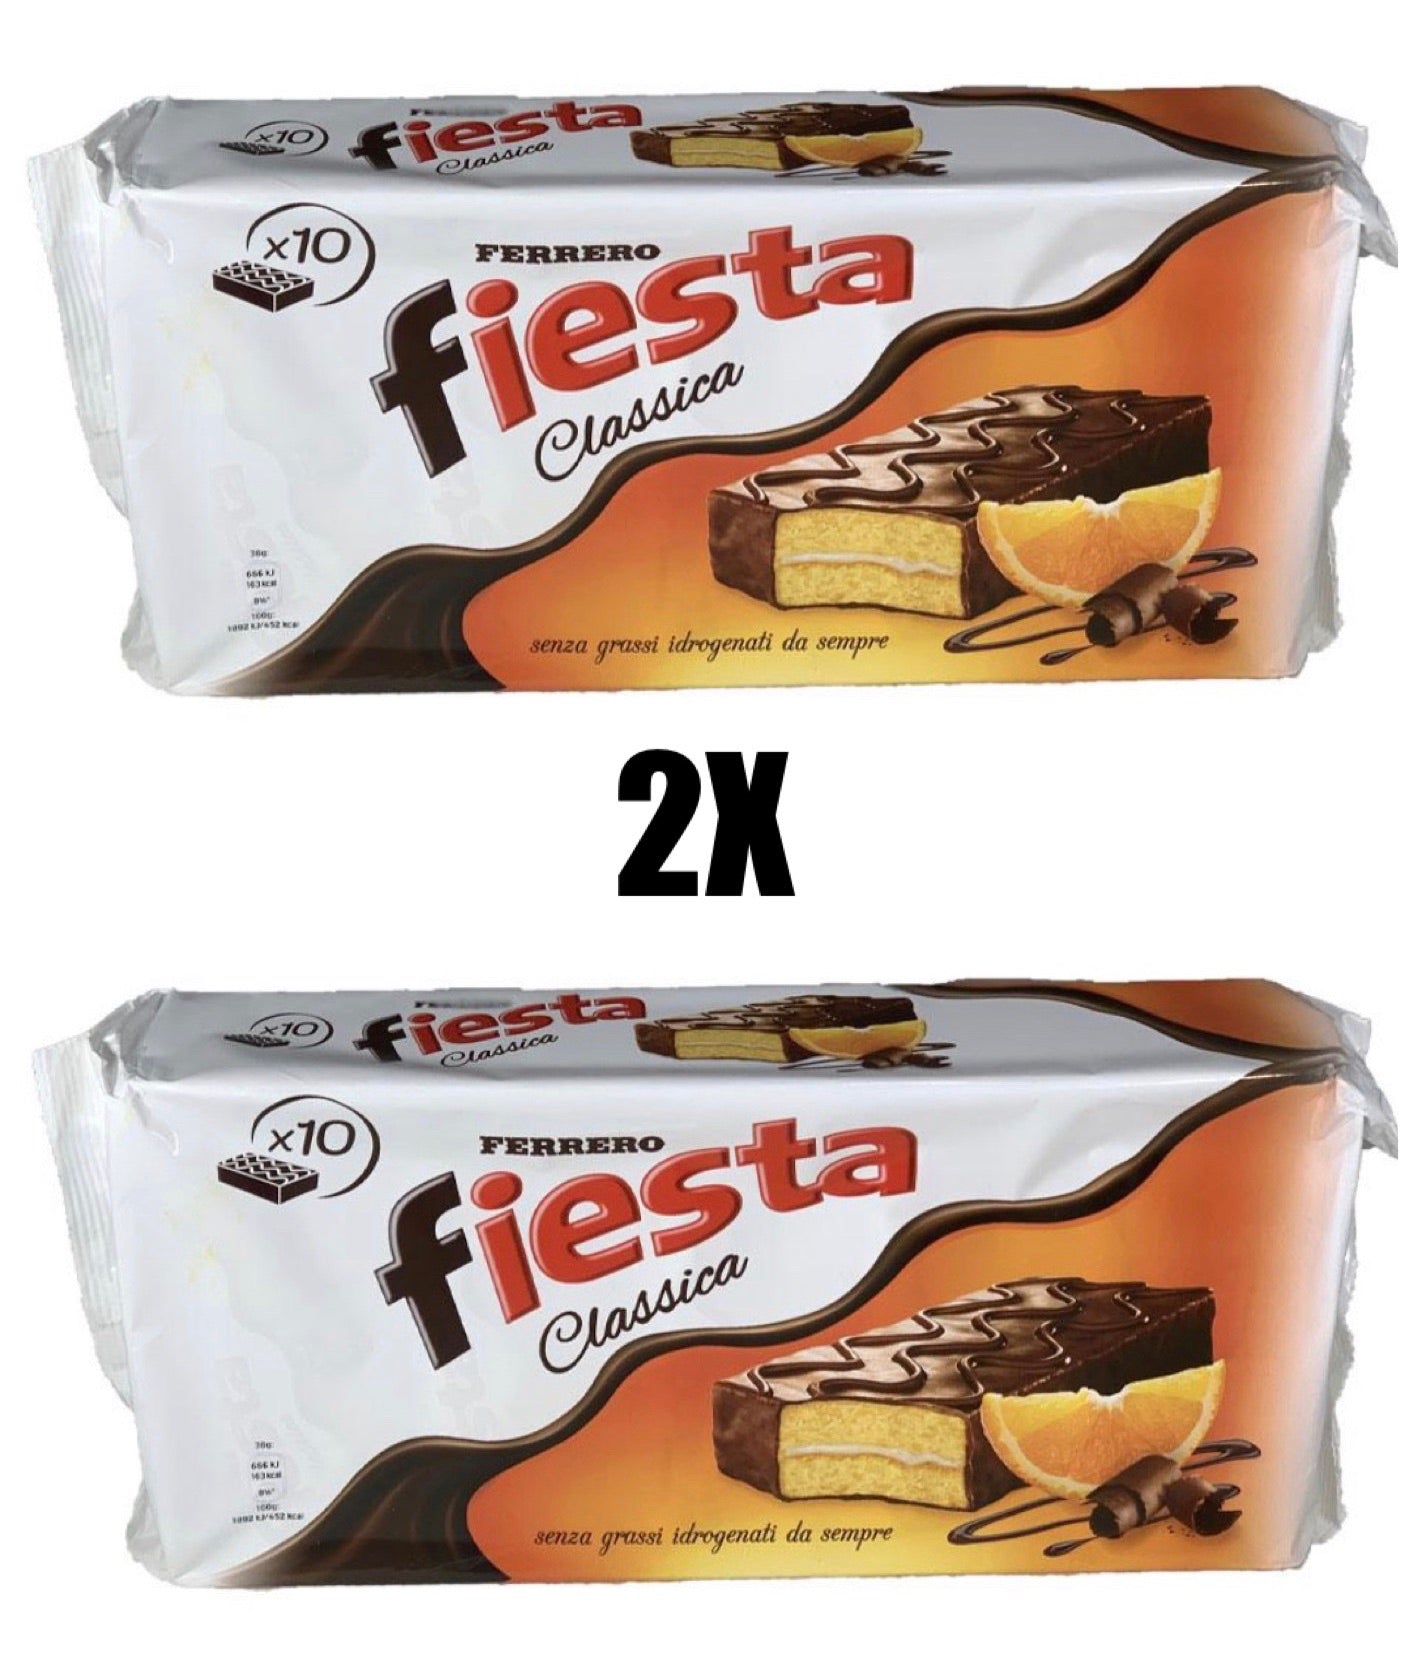 Bundle 2 packs of Fiesta Ferrero (20 snacks)